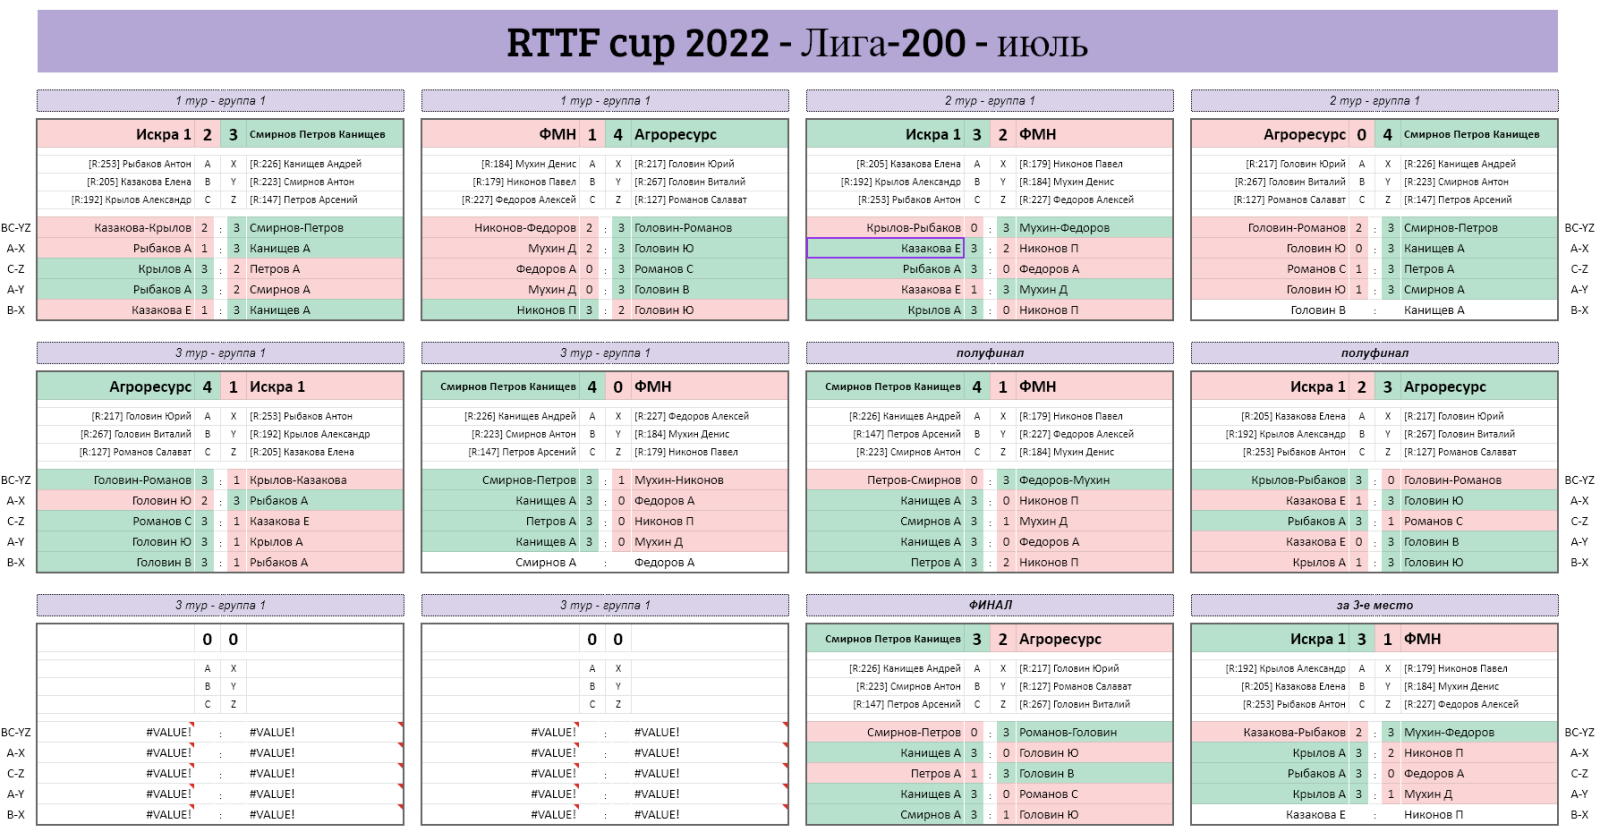 результаты турнира Лига - 200! 5-й тур Кубка RTTF 2022